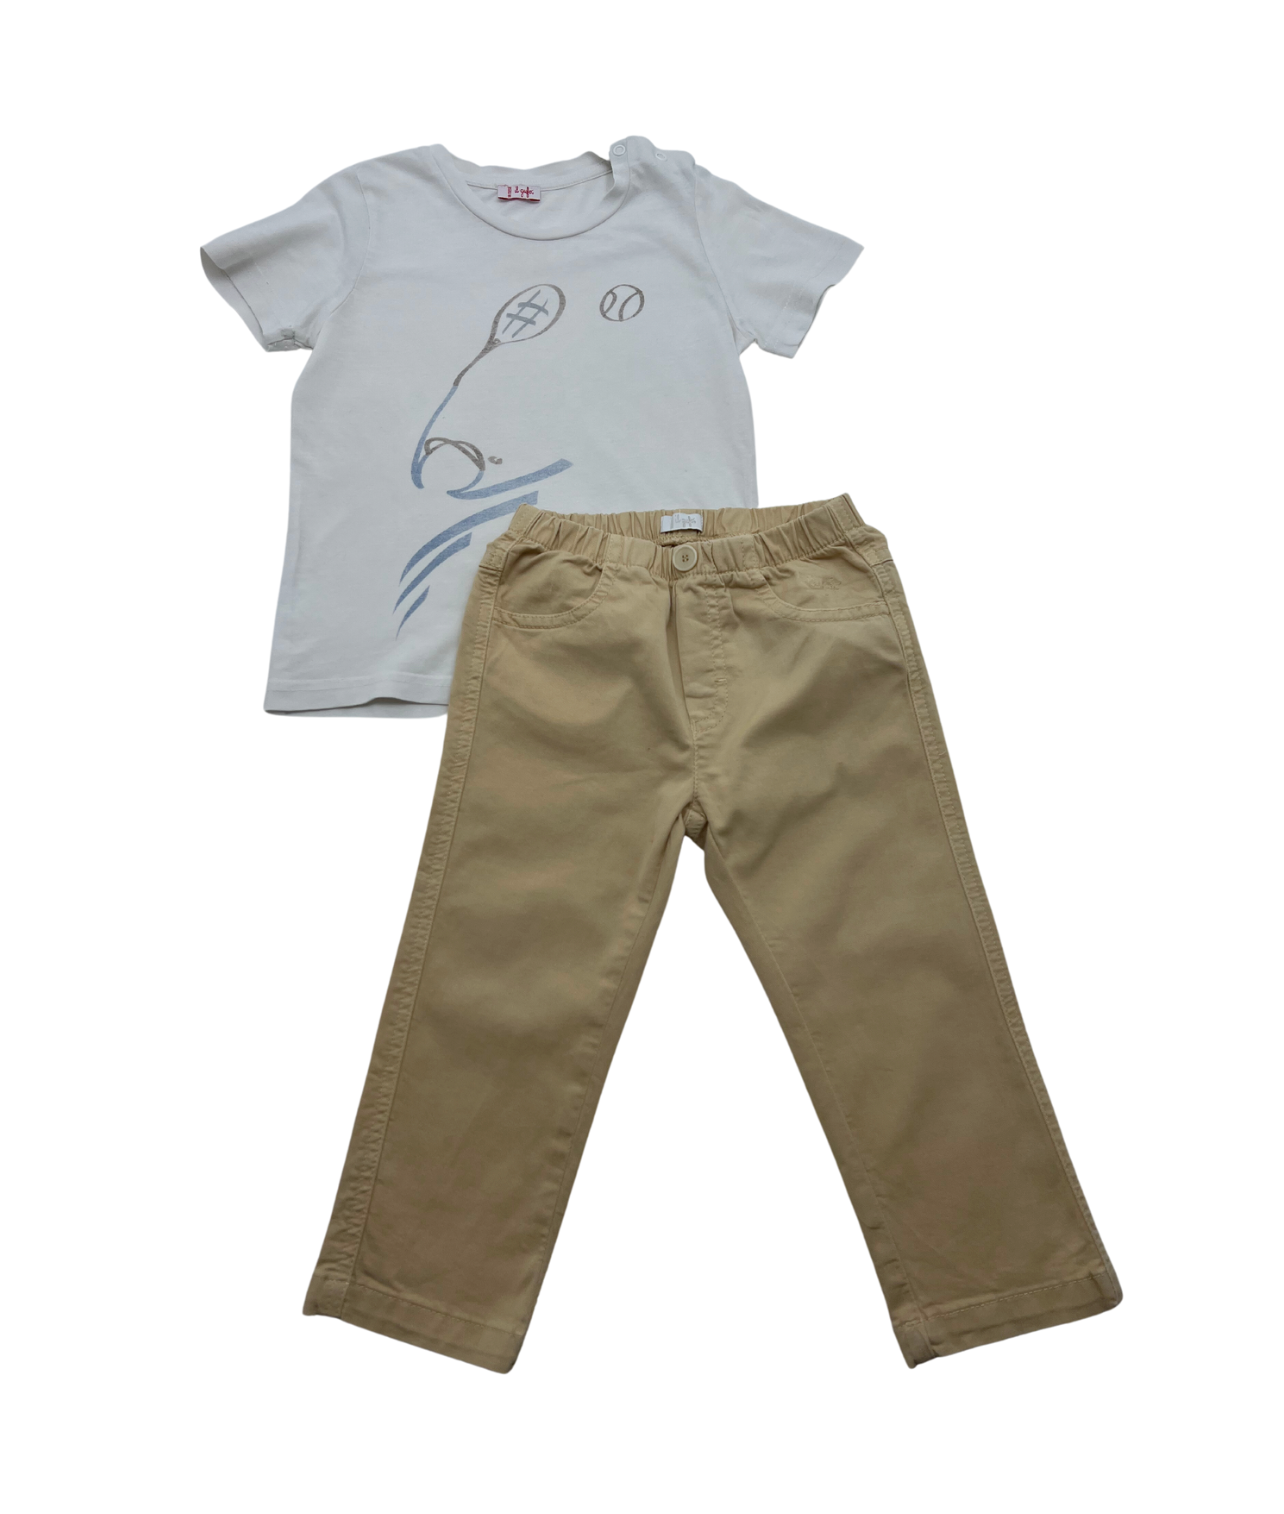 IL GUFO - Ensemble pantalon beige & t-shirt tennis - 18 mois